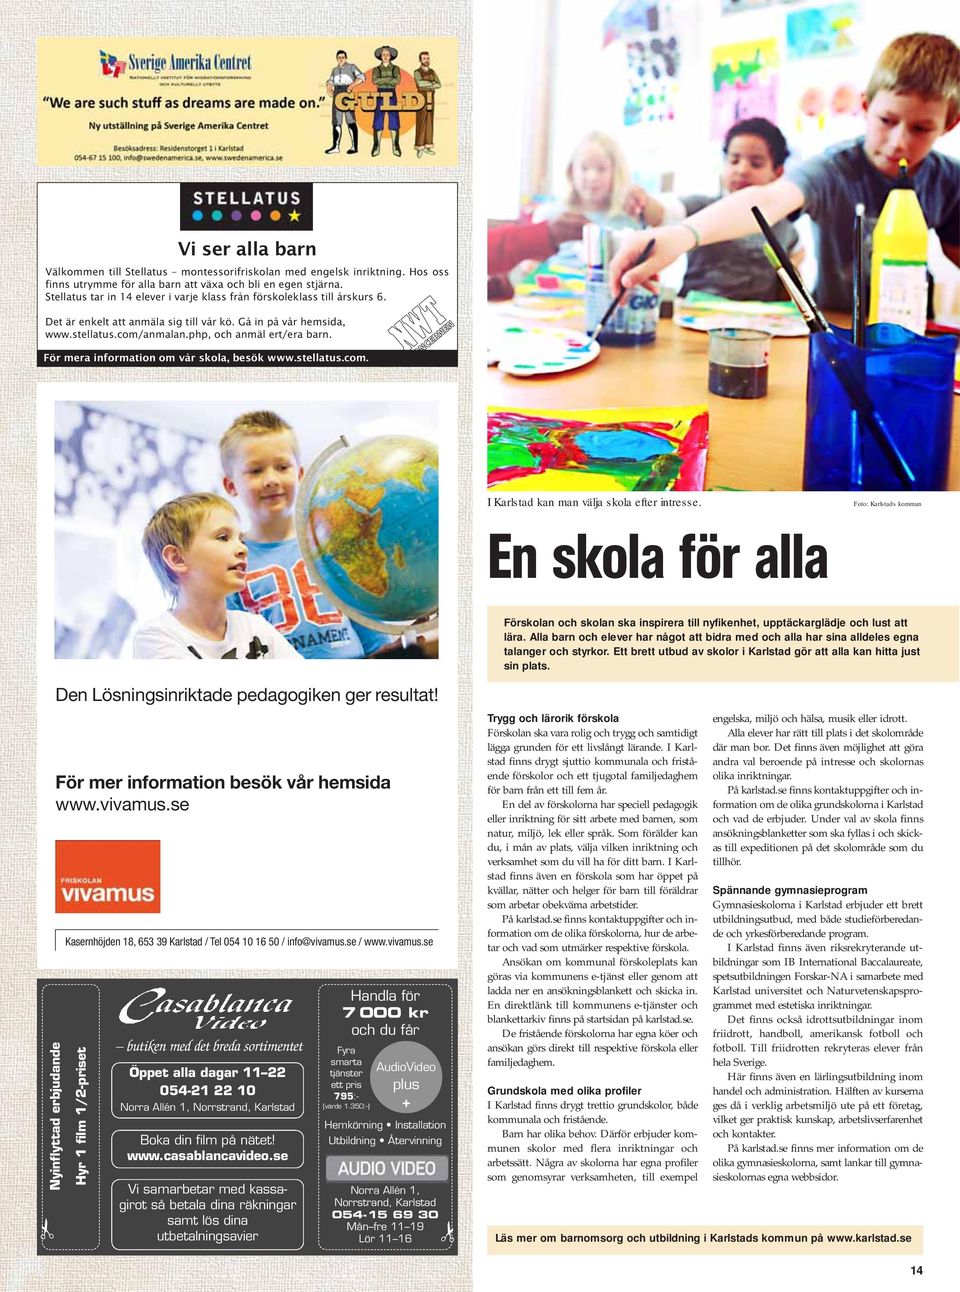 För mera information om vår skola, besök www.stellatus.com. I Karlstad kan man välja skola efter intresse.